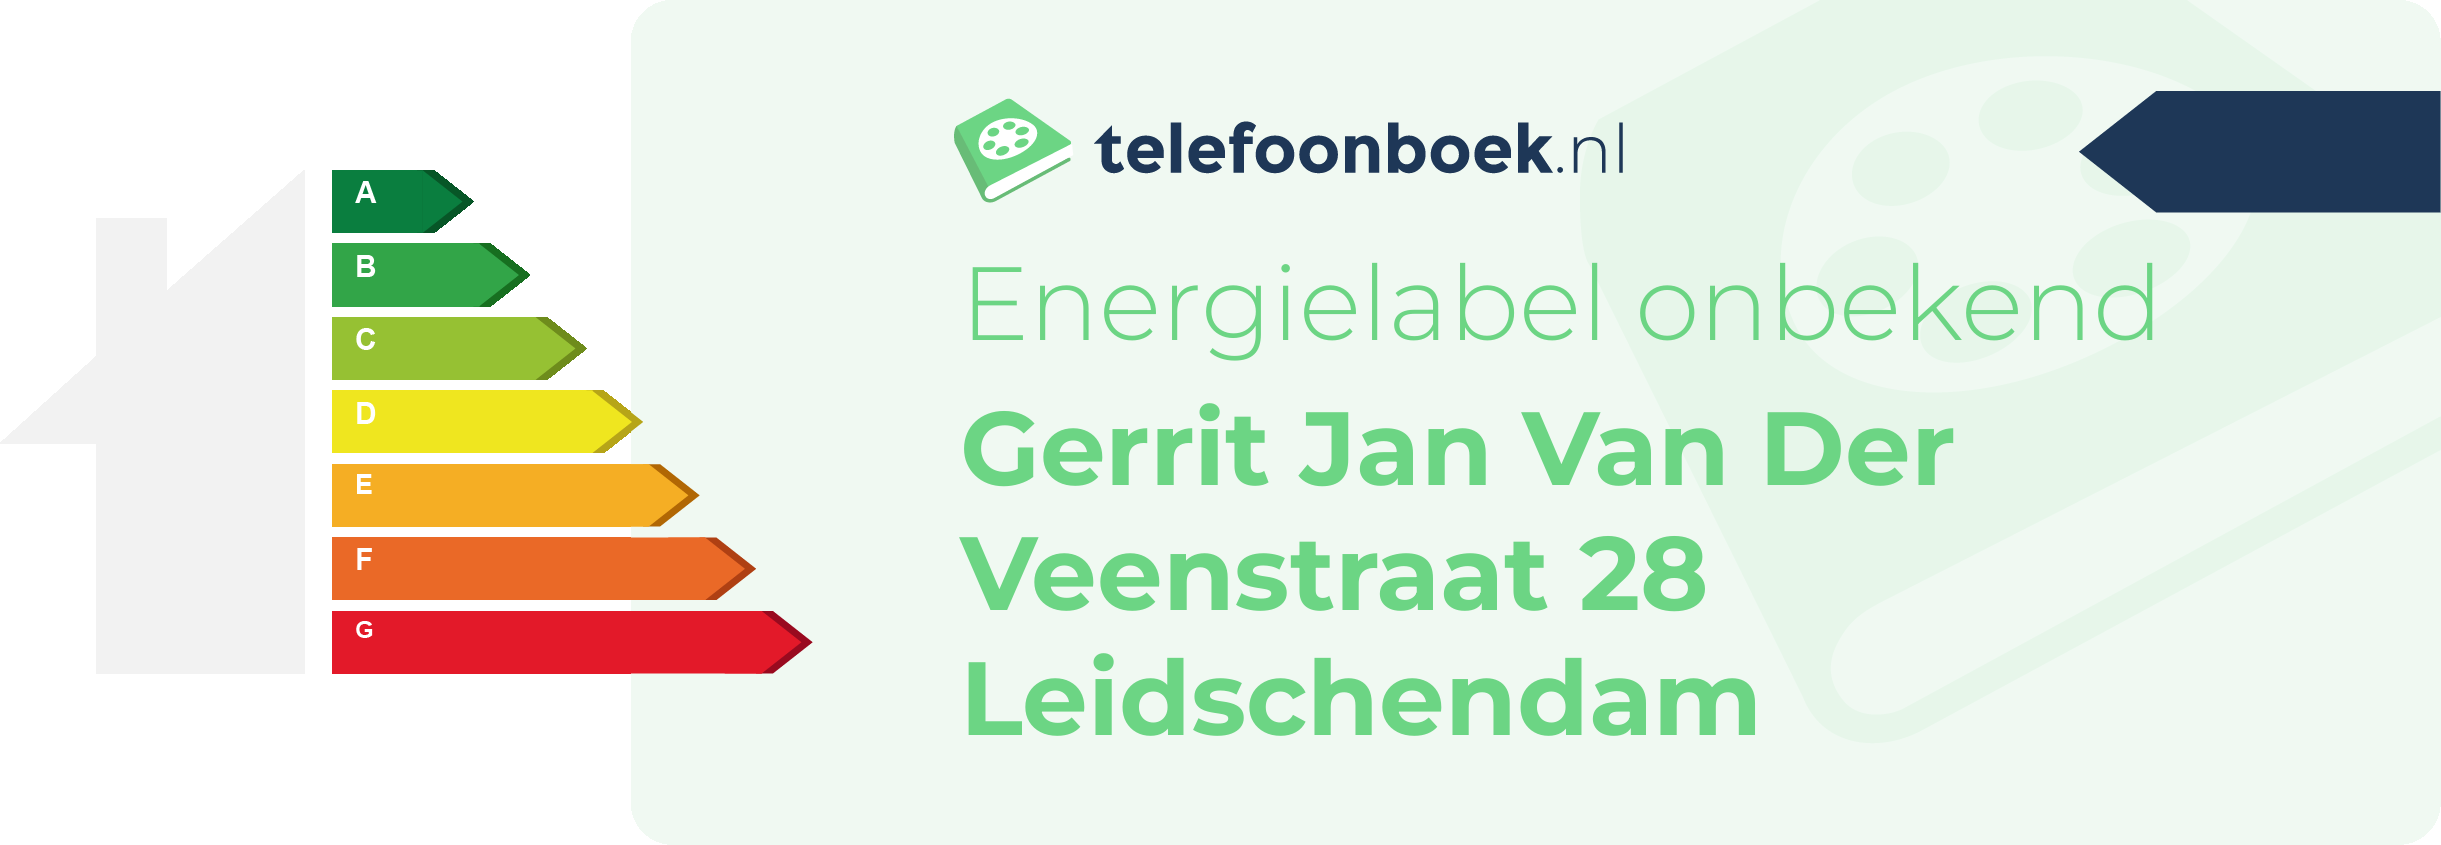 Energielabel Gerrit Jan Van Der Veenstraat 28 Leidschendam